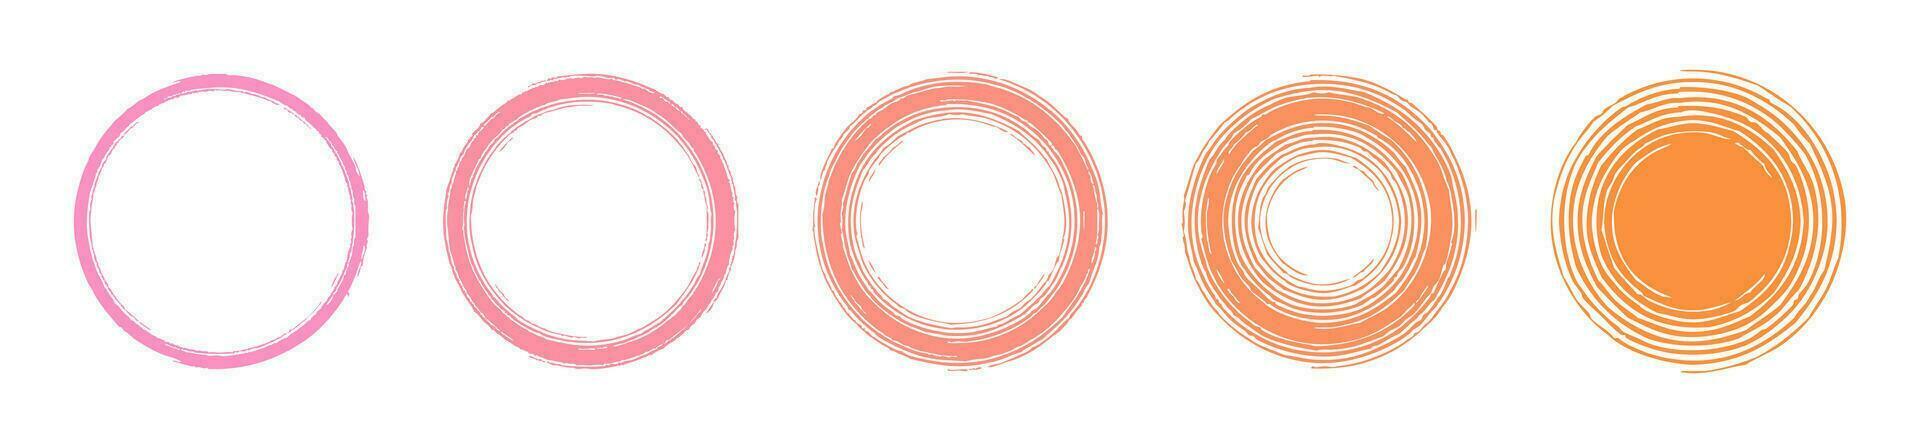 conjunto de 5 5 vector antecedentes circulo marcos con un suave color transición desde rosado a naranja, concéntrico círculos en grunge estilo, diseño elemento para web, social medios de comunicación reflejos, bandera, redondo modelo